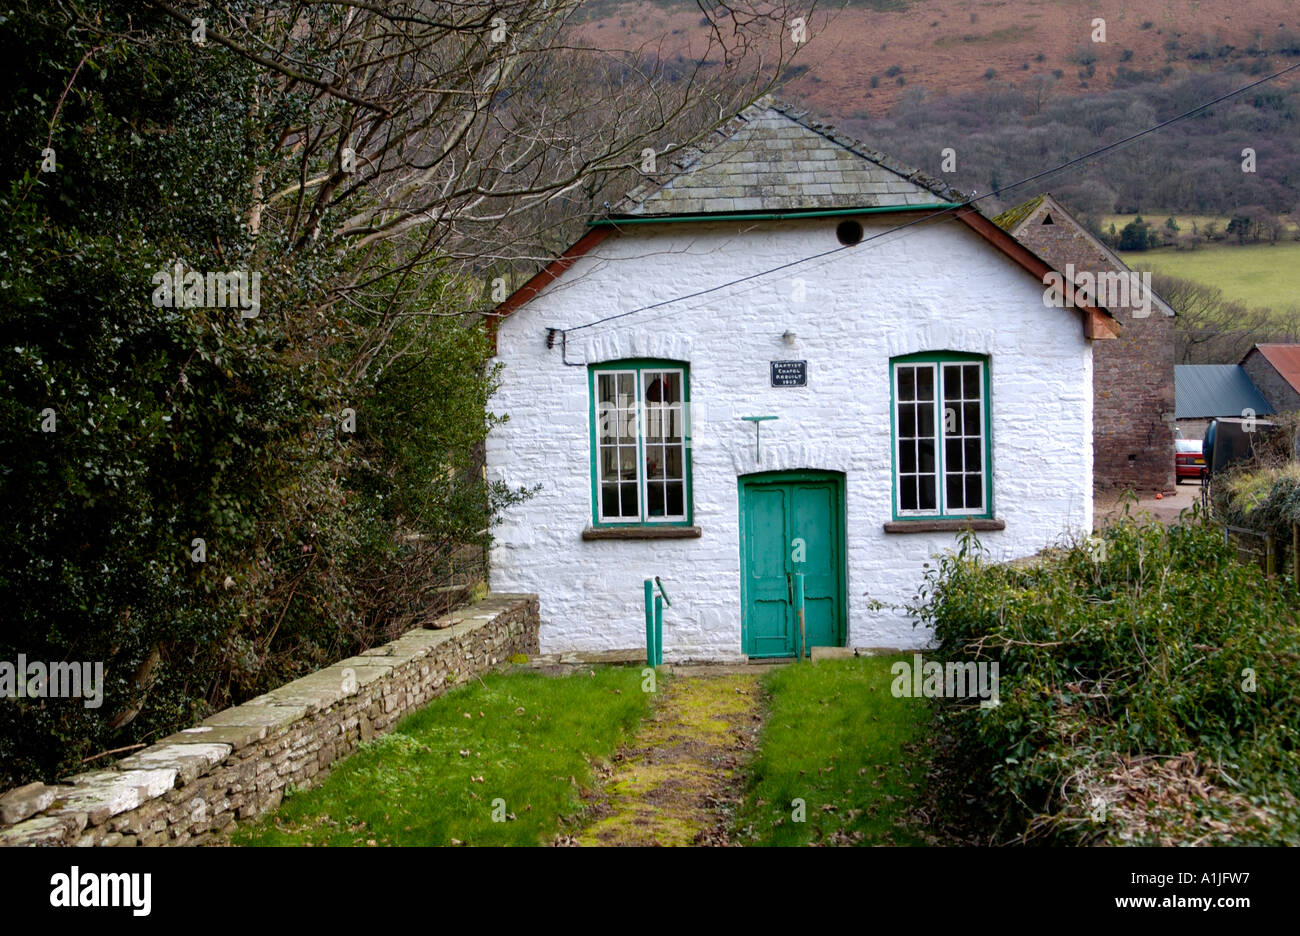 Henllan Battista cappella datata 1805 nella valle di Ewyas Honddu Valle in Montagna Nera South Wales UK Foto Stock